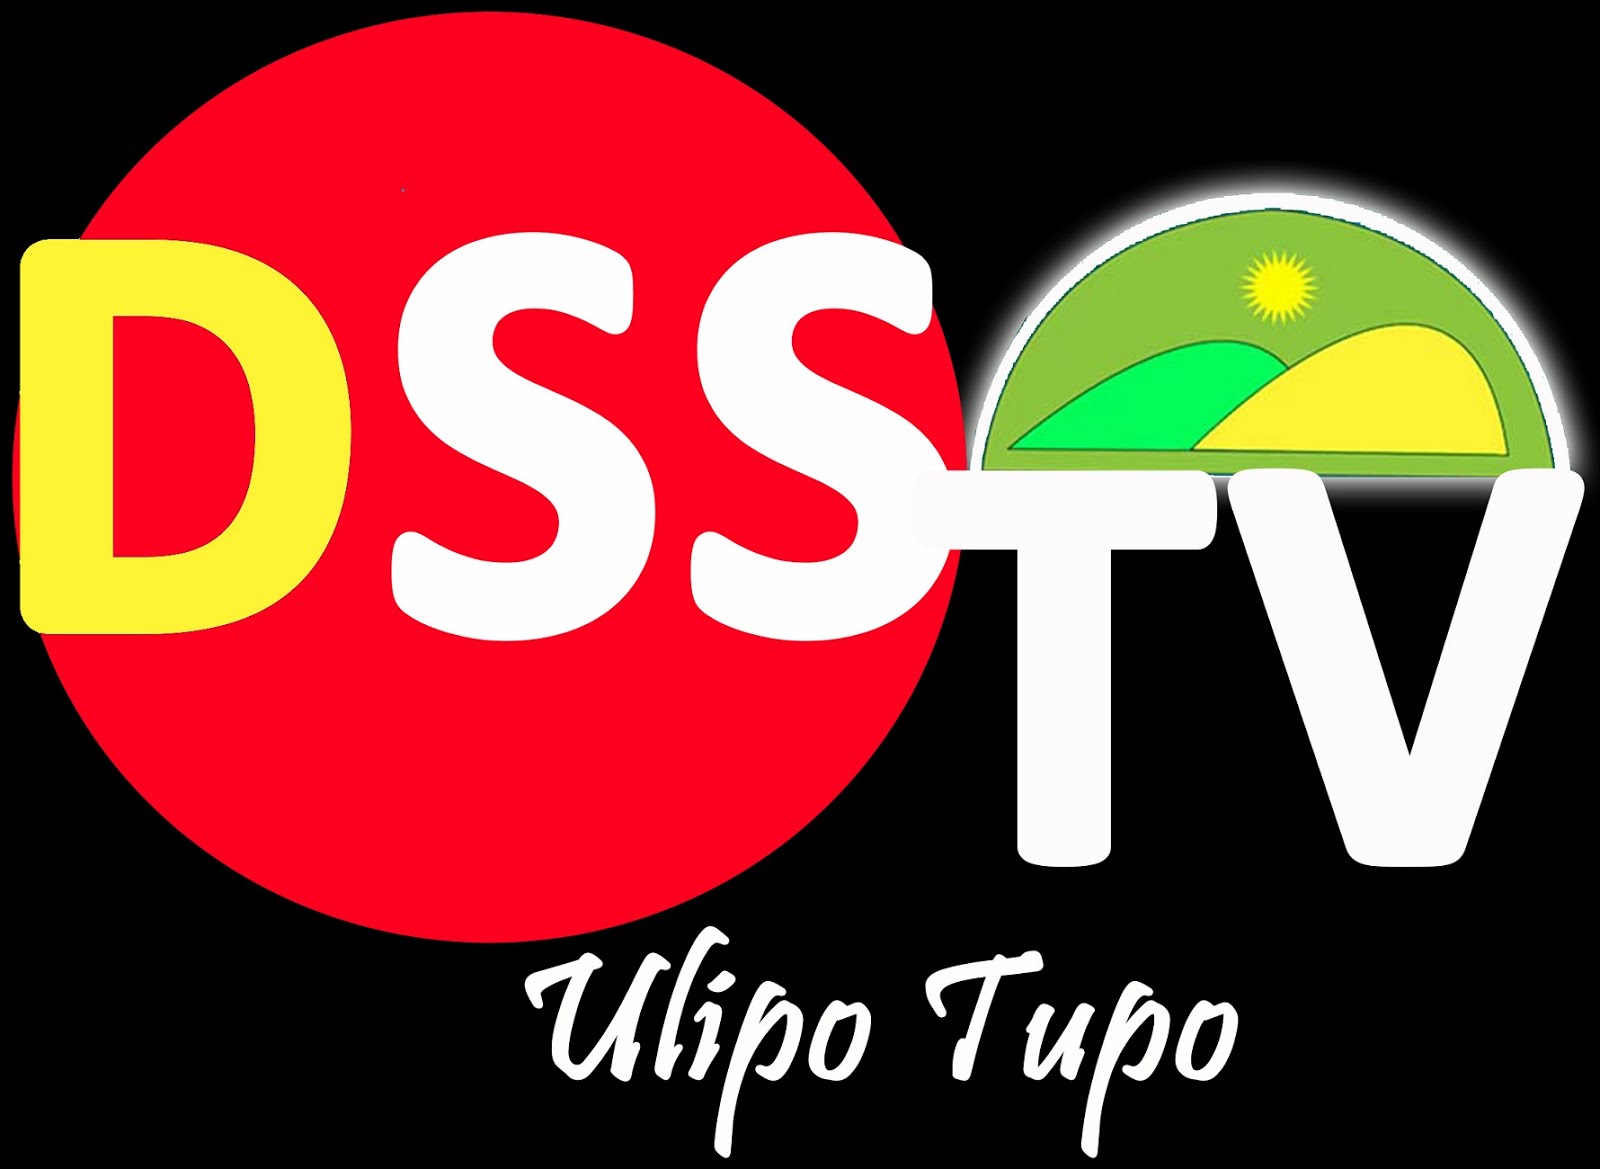 DSS TV